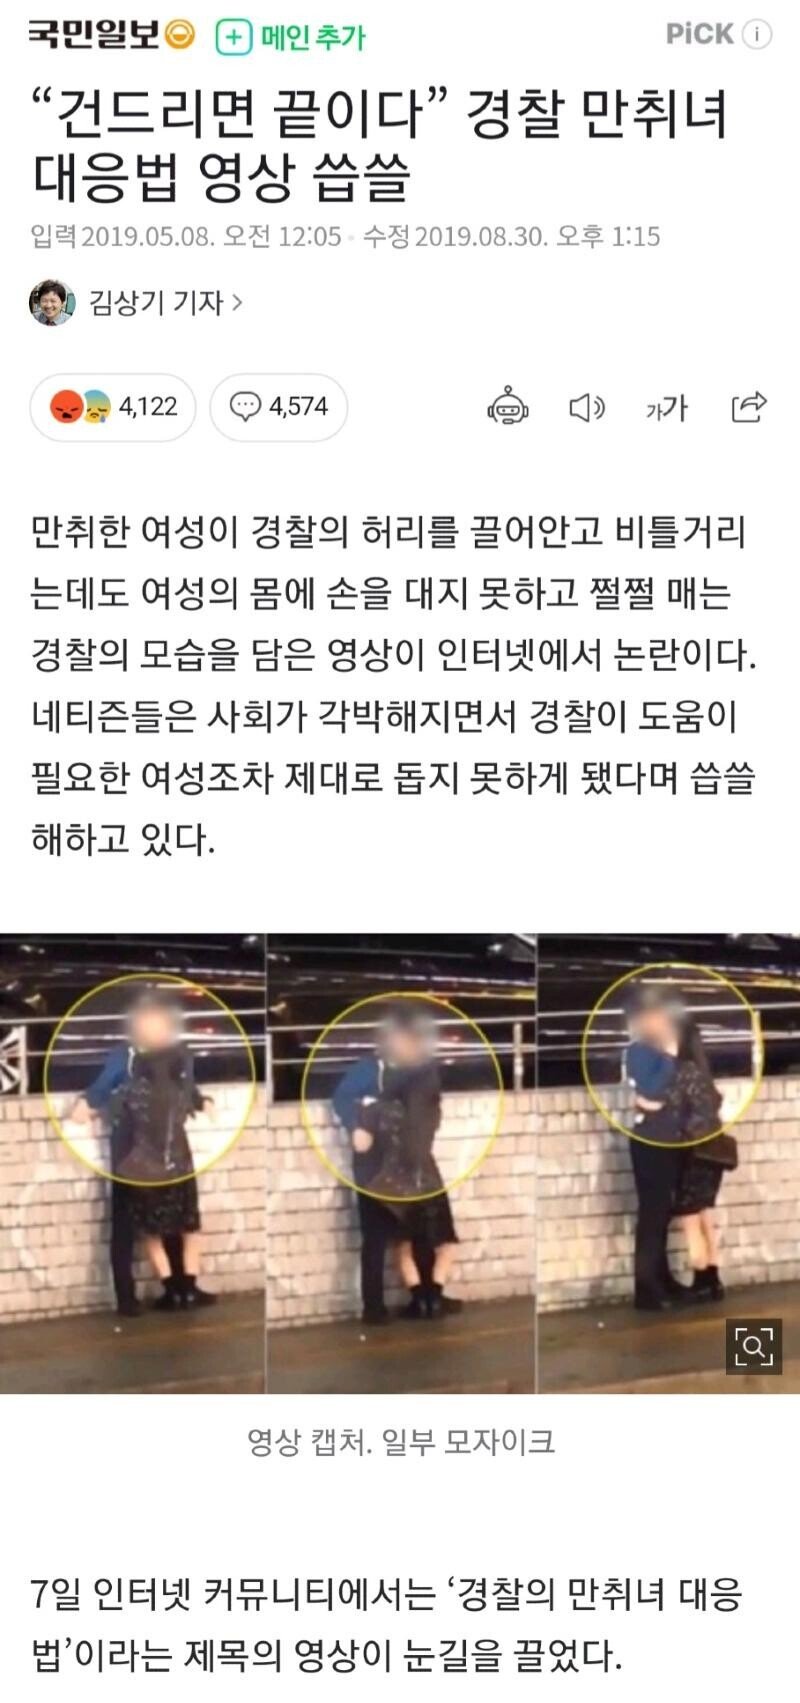 한국식 경찰의 취객 대처법